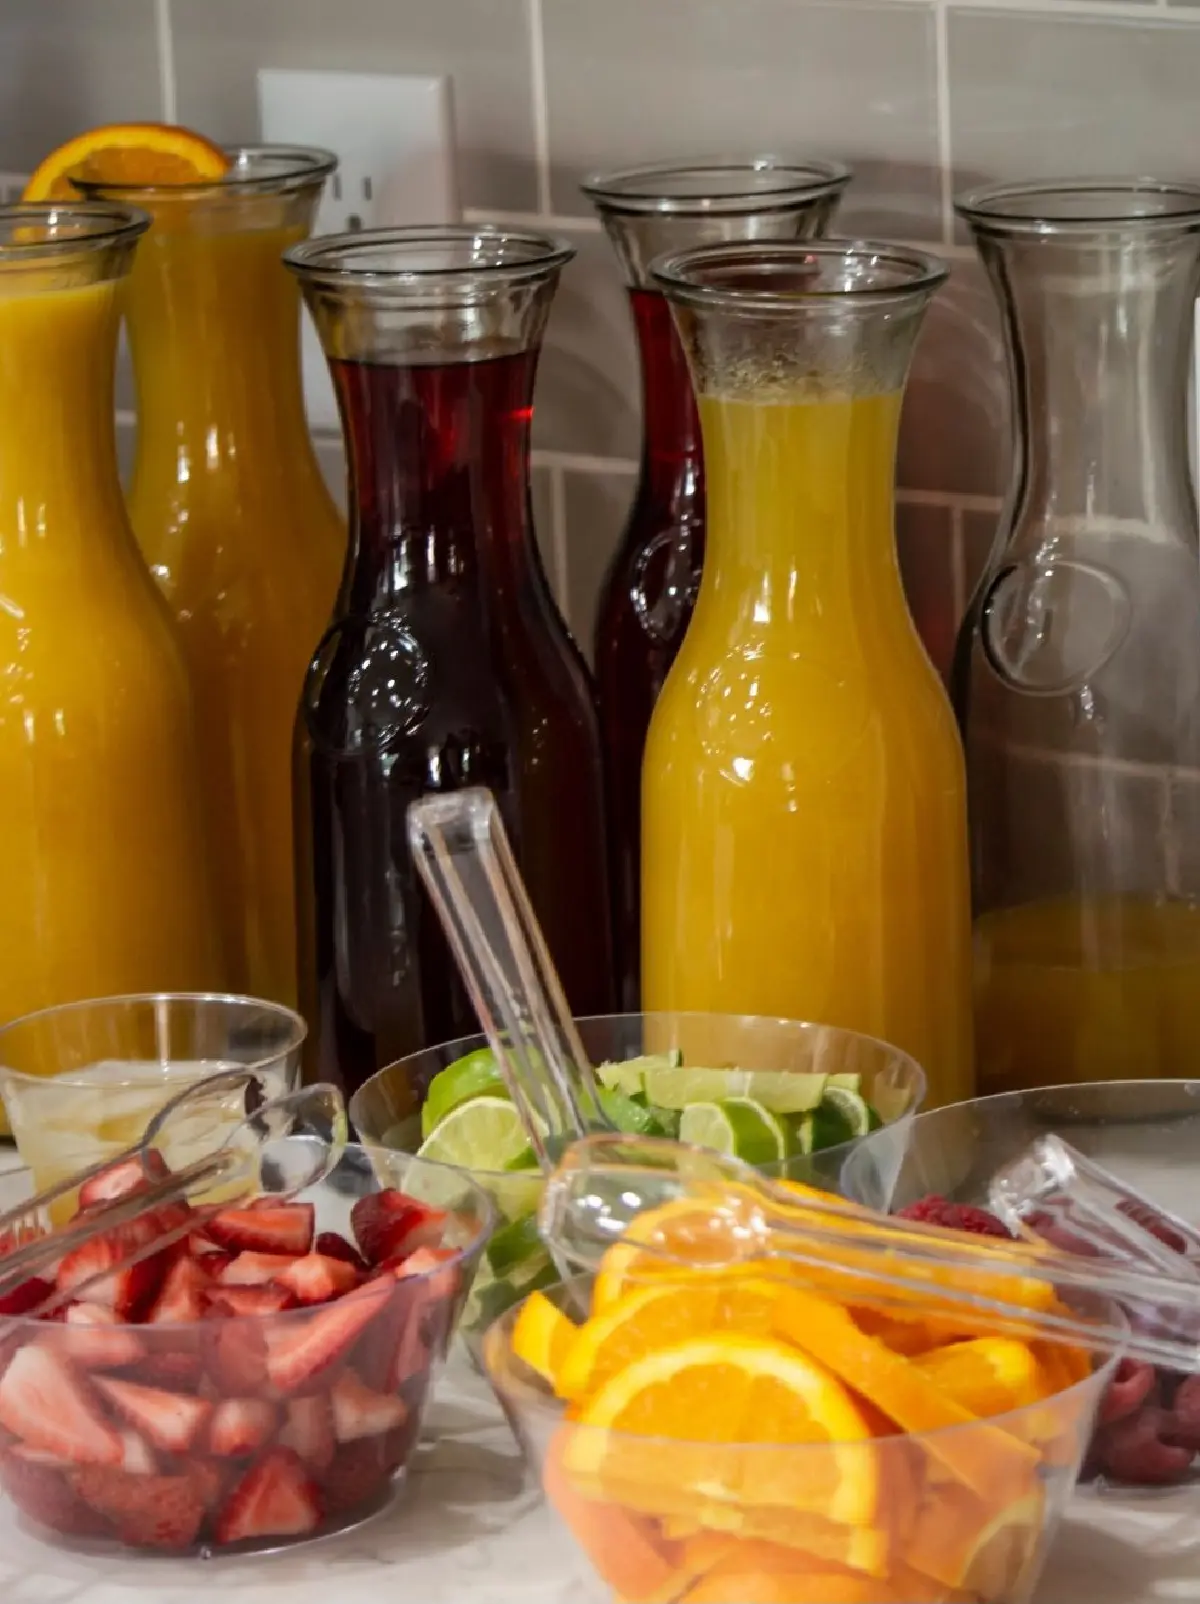 DIY mimosa bar juices and fruits